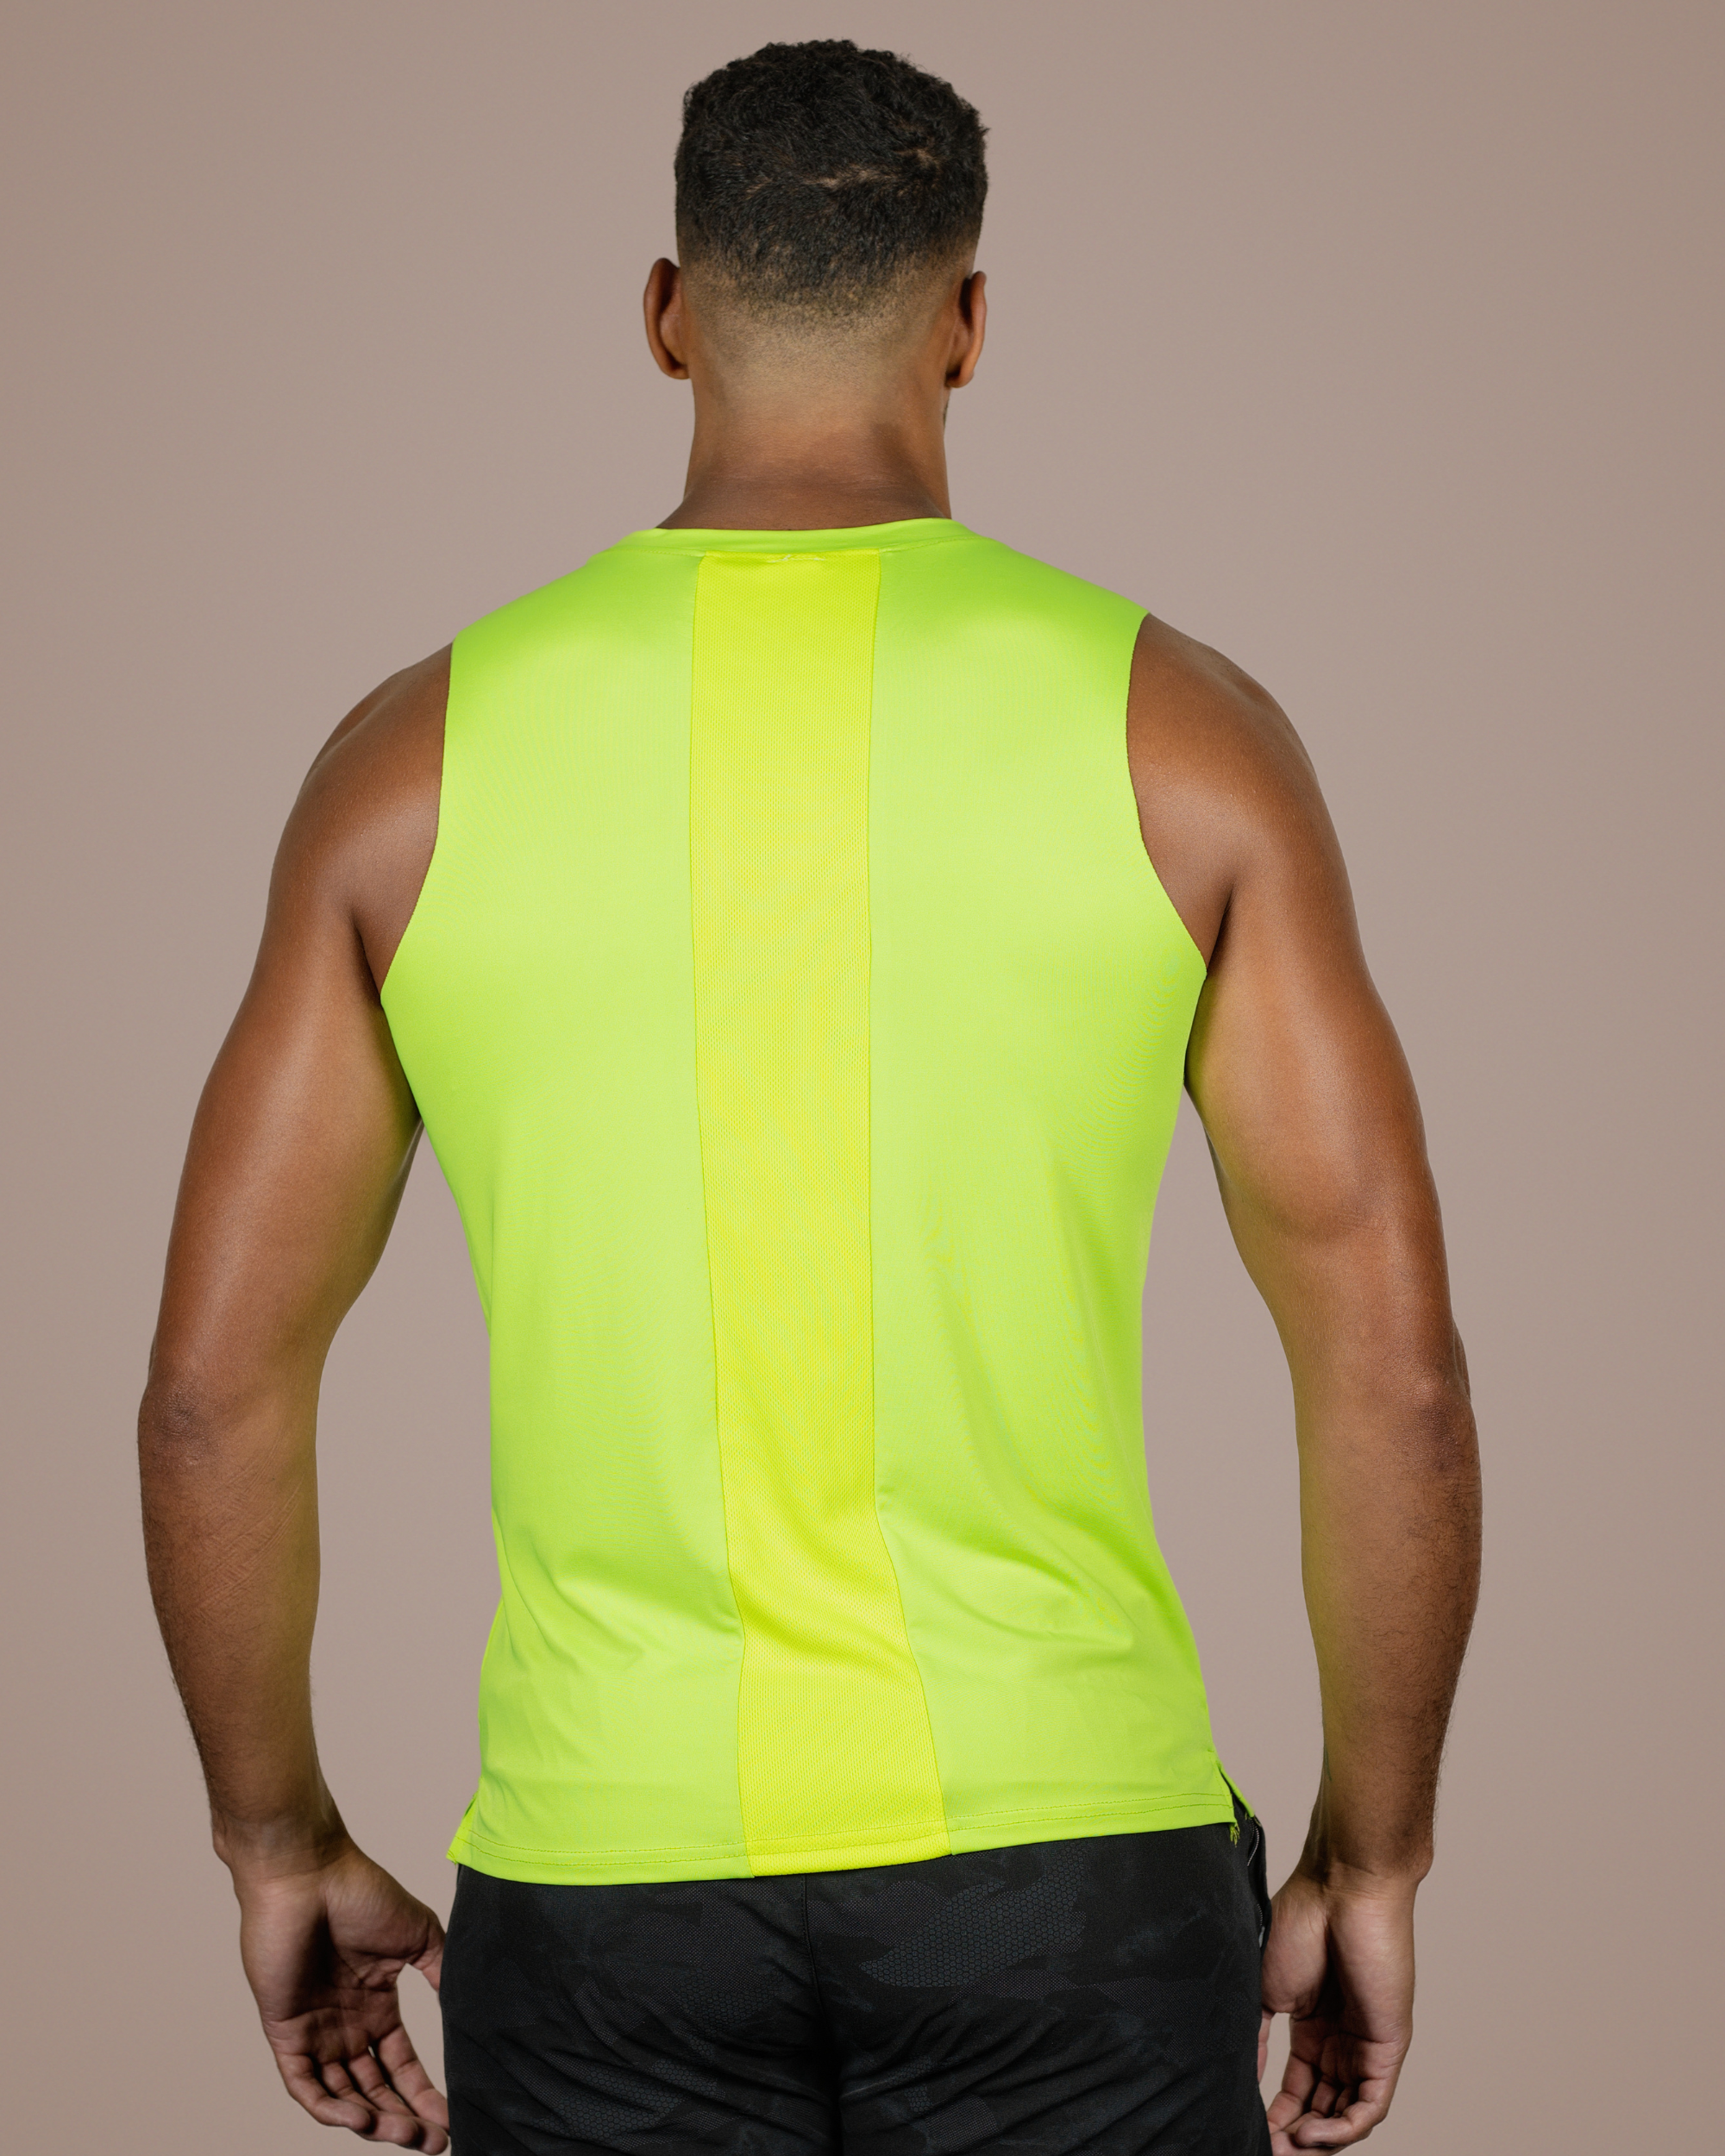 LiftRift Sleeveless Men's Slim Fit Tank Top - Fluorescent green